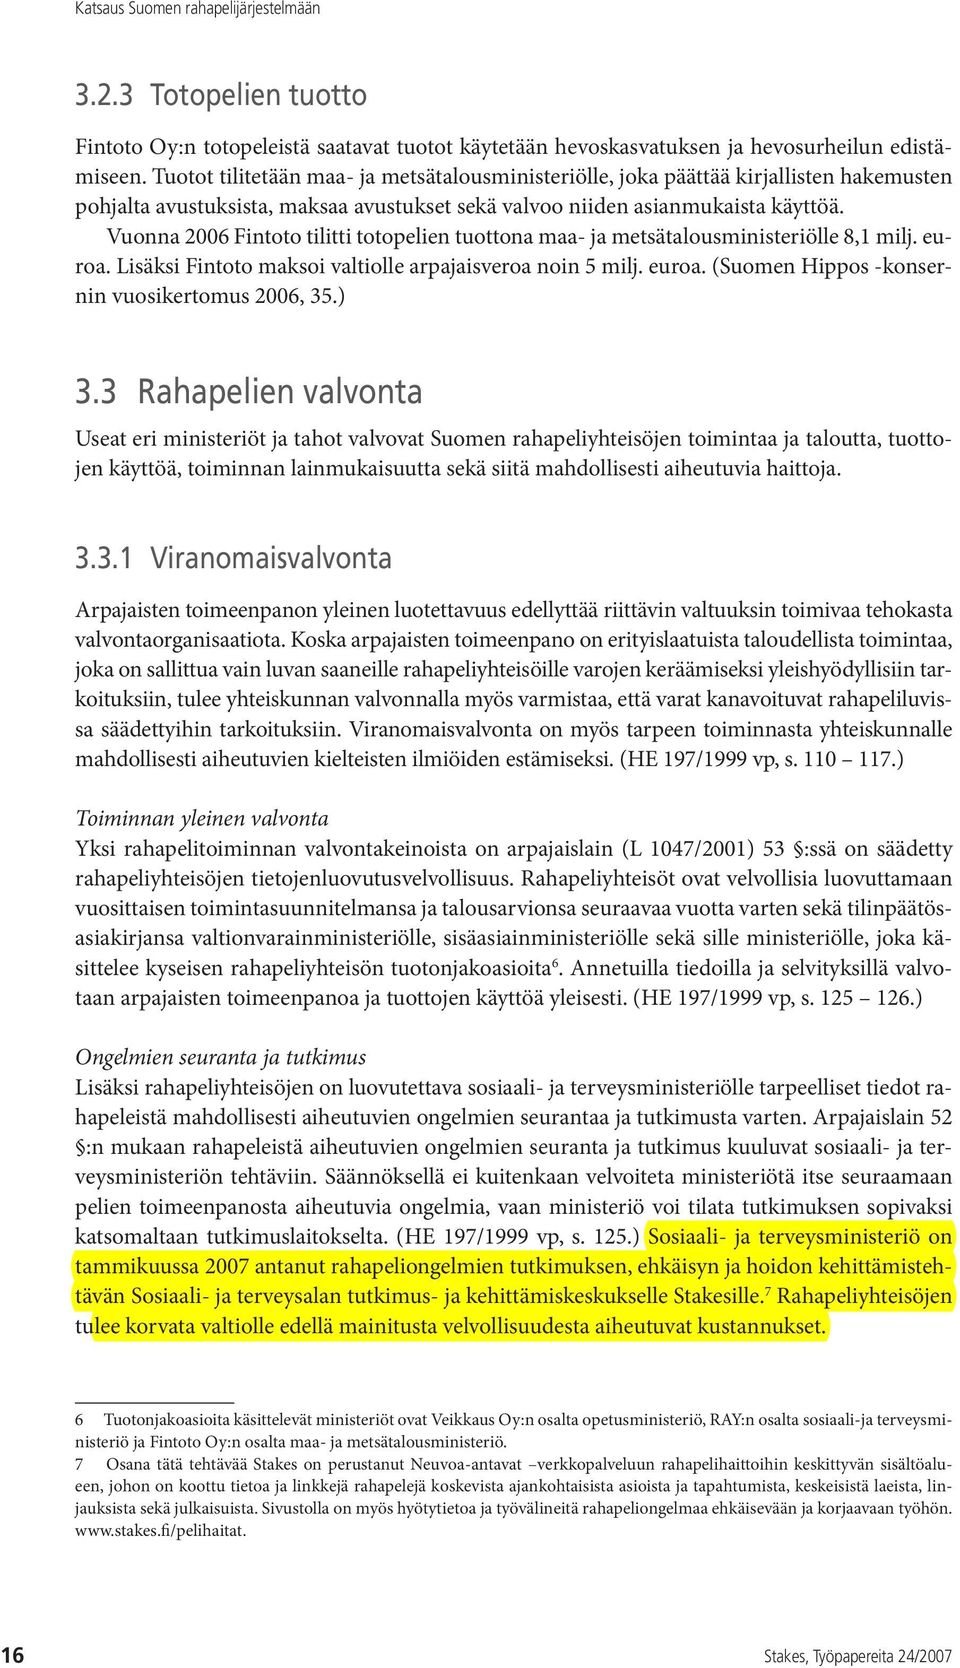 Vuonna 2006 Fintoto tilitti totopelien tuottona maa- ja metsätalousministeriölle 8,1 milj. euroa. Lisäksi Fintoto maksoi valtiolle arpajaisveroa noin 5 milj. euroa. (Suomen Hippos -konsernin vuosikertomus 2006, 35.